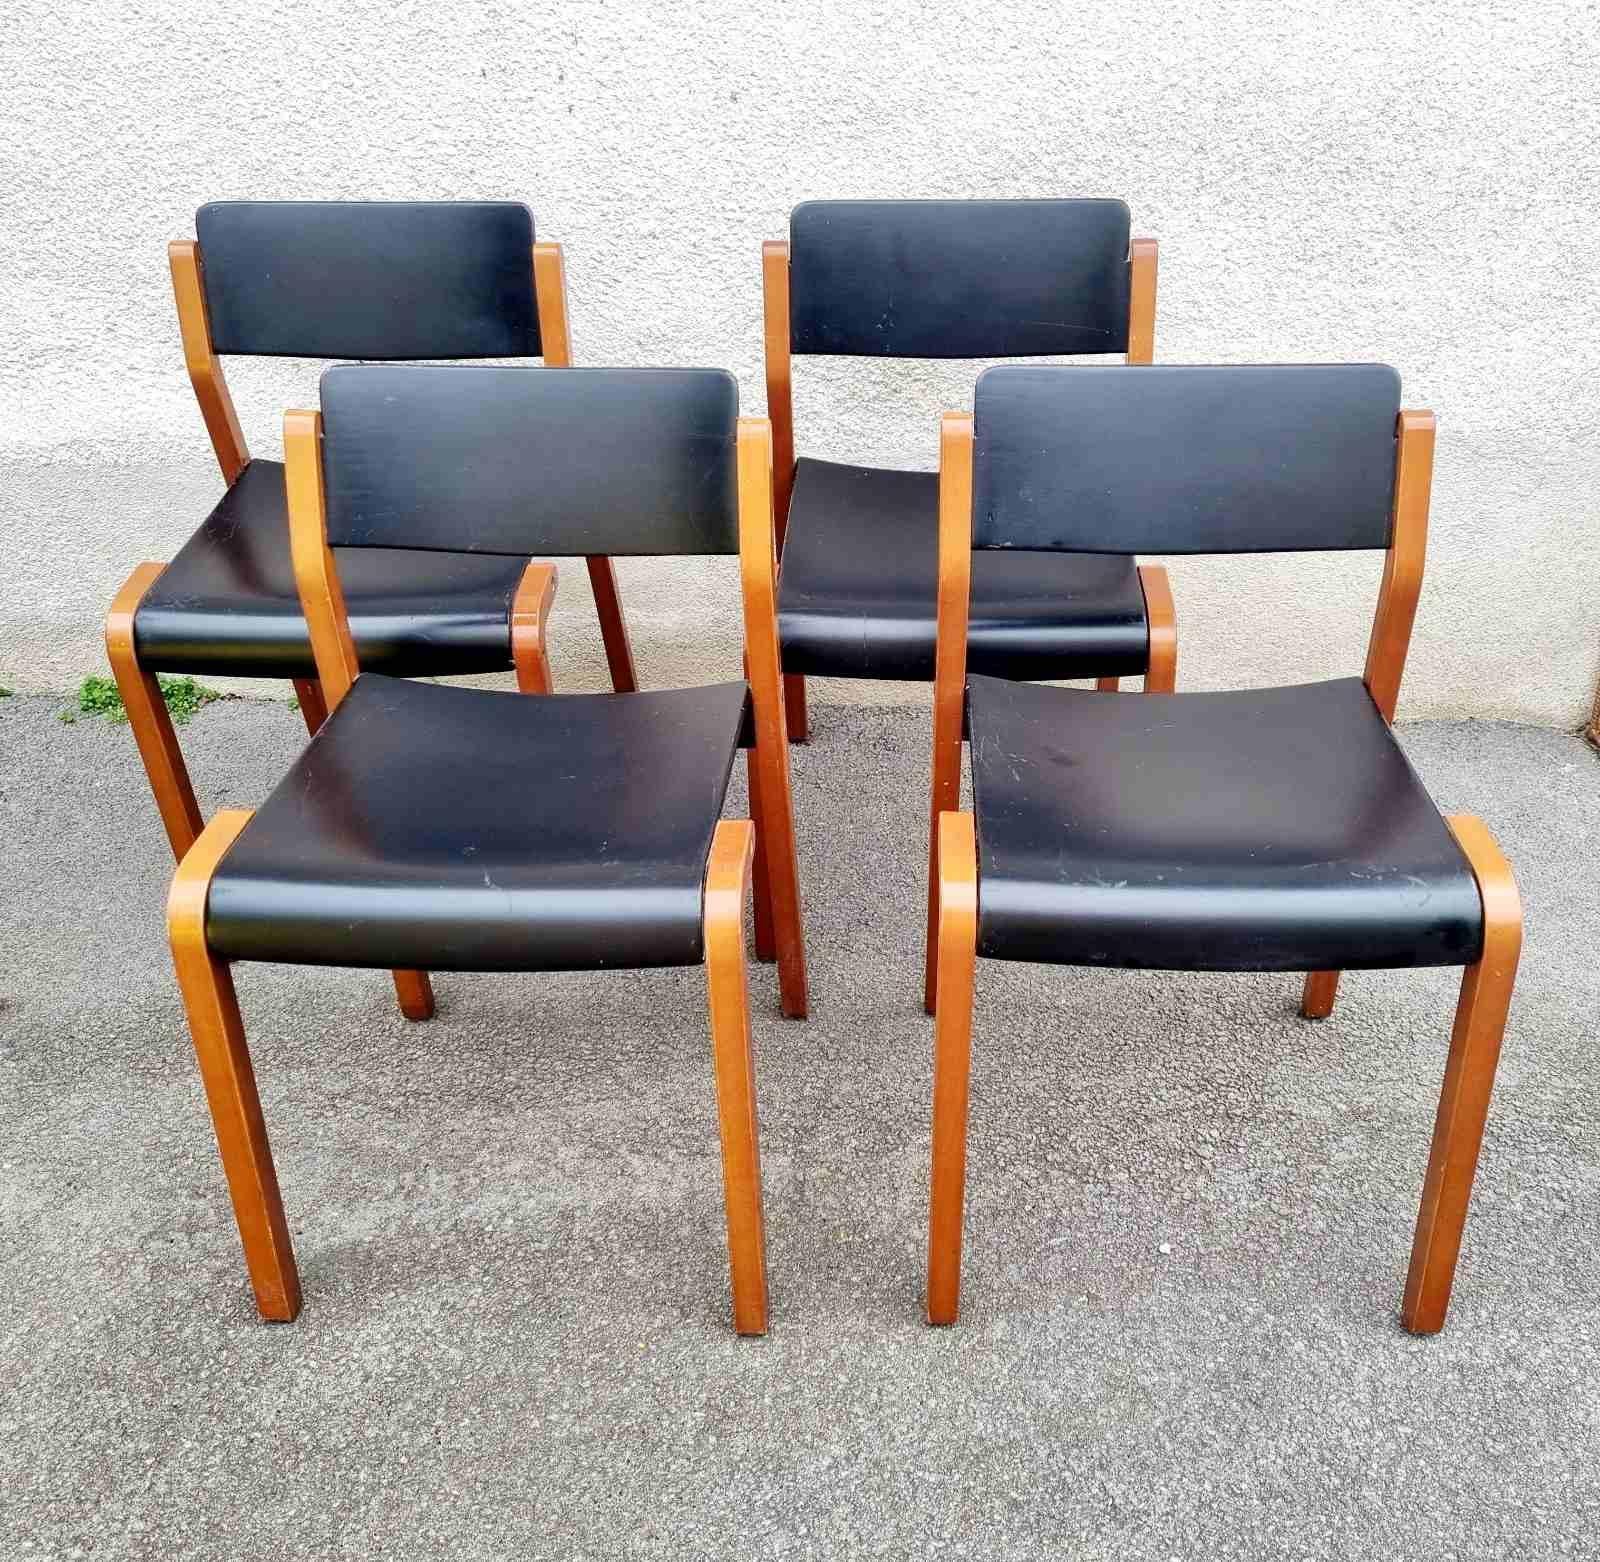 Late 20th Century Italian Modern Gruppo Chairs, De Pas, D'Urbino & Lomazzi for Bellato, Italy 80s For Sale